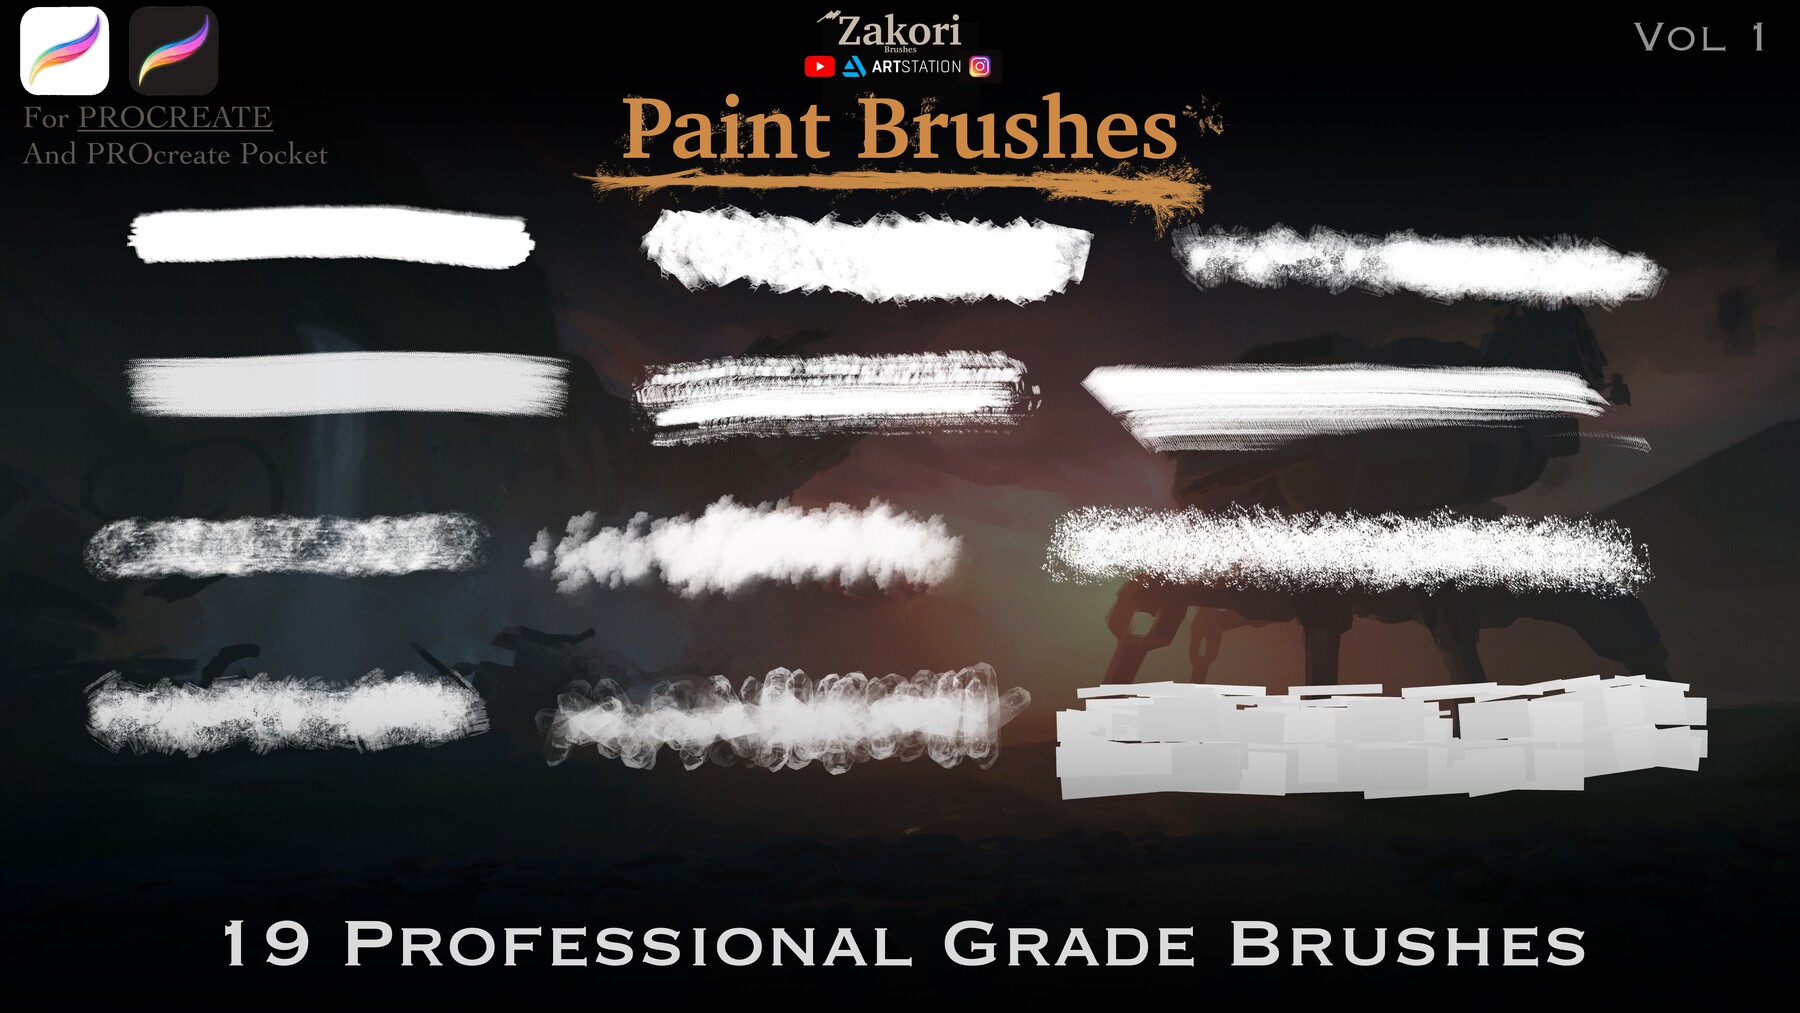 Brushes landscape 1 in.